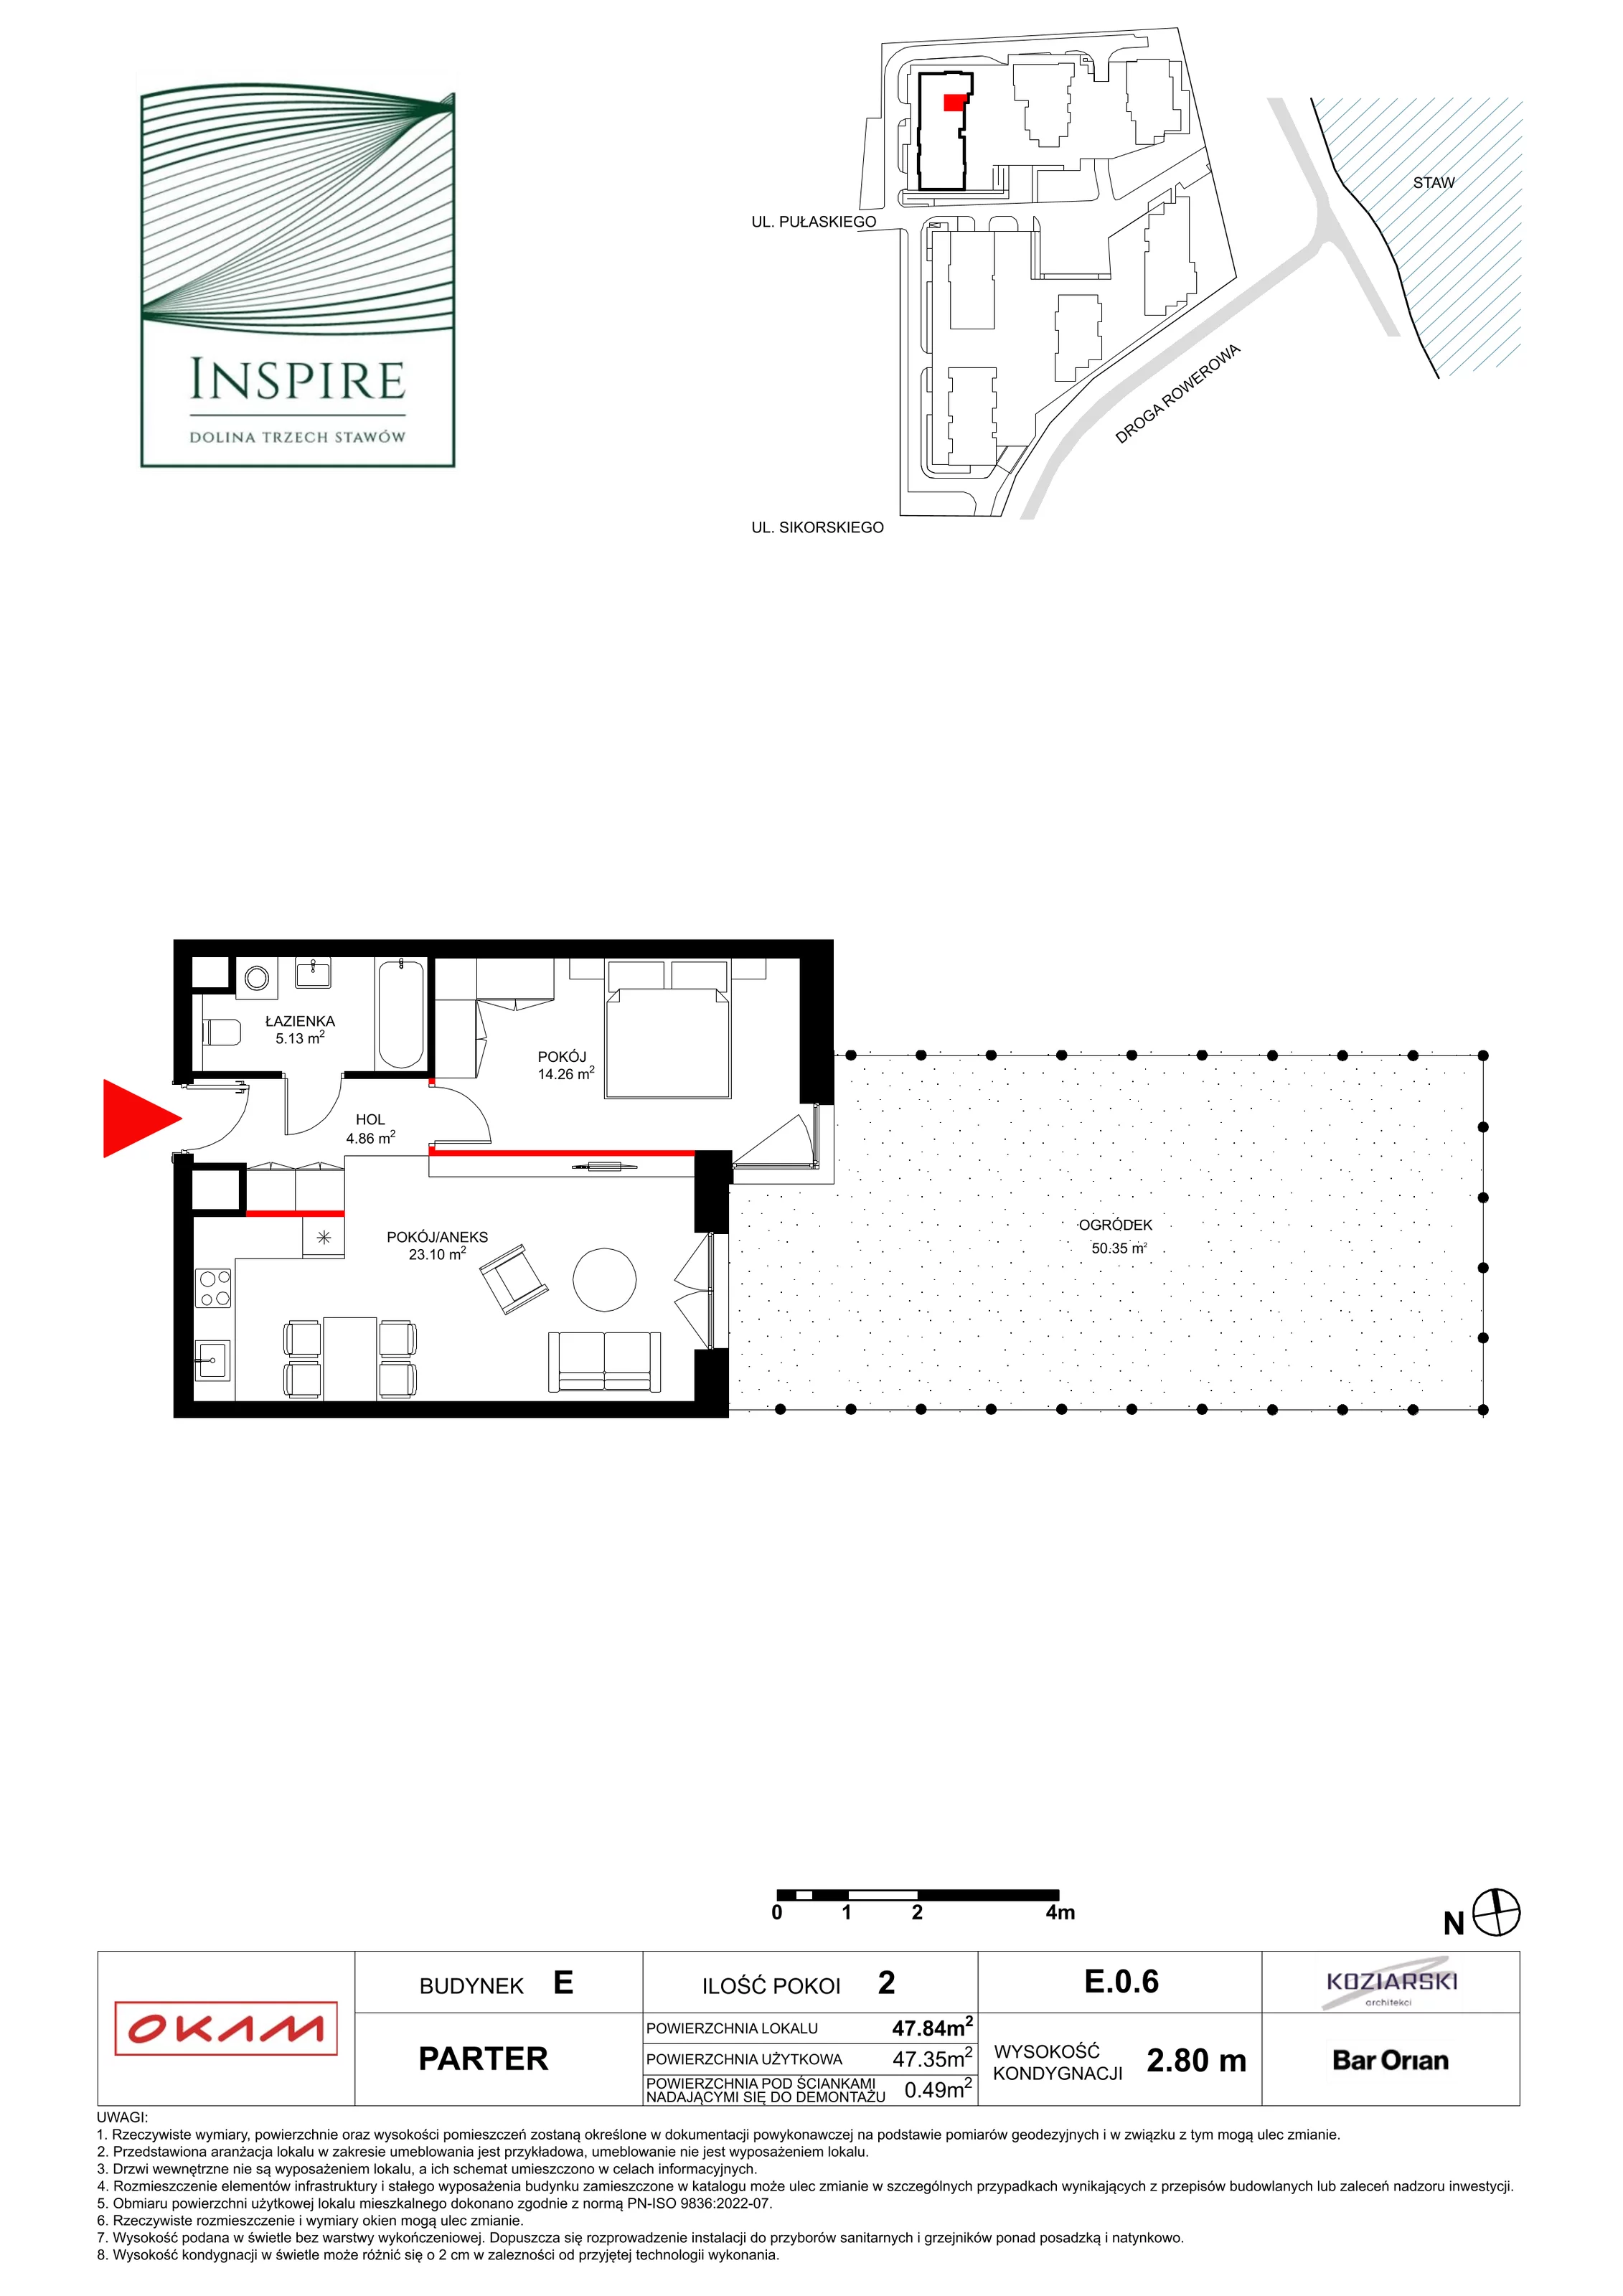 Mieszkanie 47,35 m², parter, oferta nr E.0.6, Inspire, Katowice, Osiedle Paderewskiego-Muchowiec, Dolina Trzech Stawów, ul. gen. Sikorskiego 41